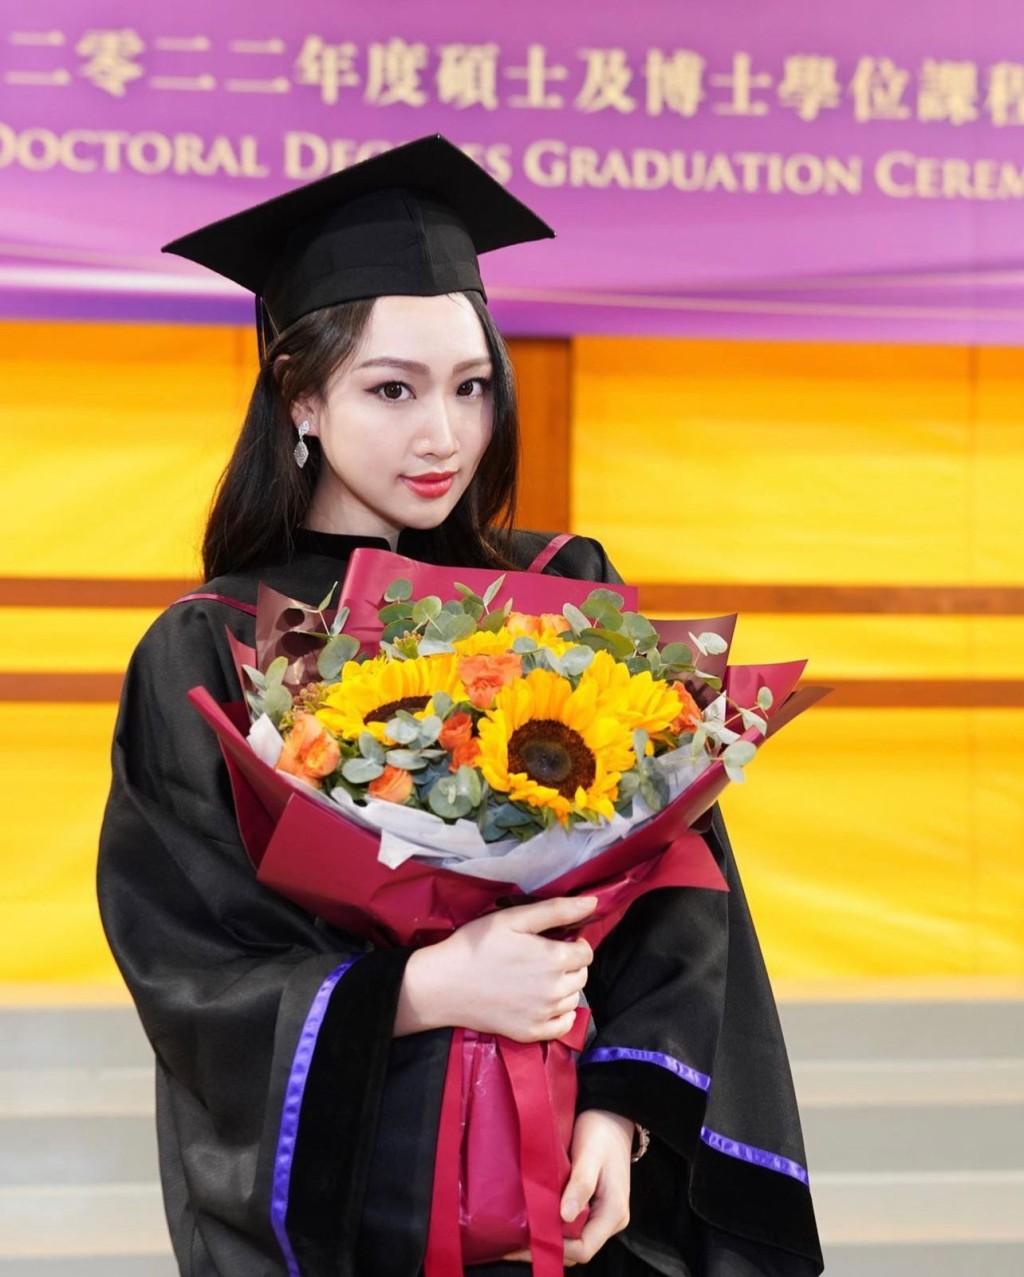 黃子桐畢業於香港大學，主修中文及犯罪學系，是一名女學霸。